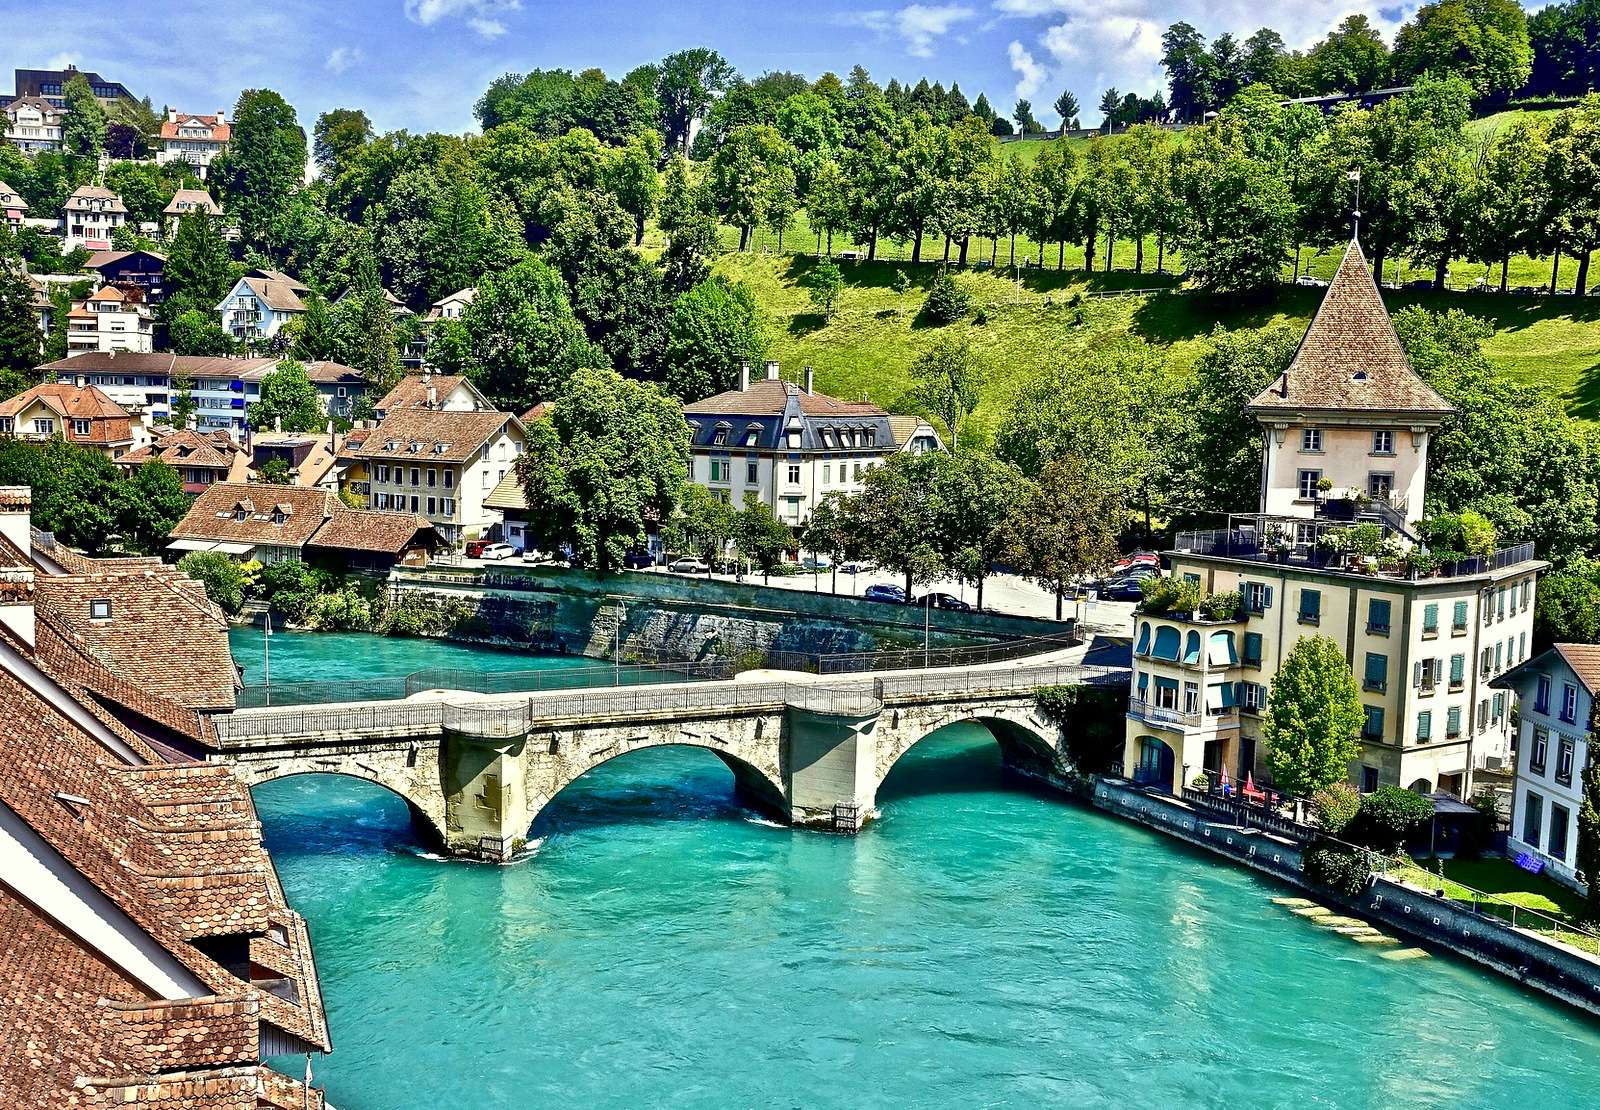 ベルンのウンタートール橋 (スイス) ジグソーパズルオンライン